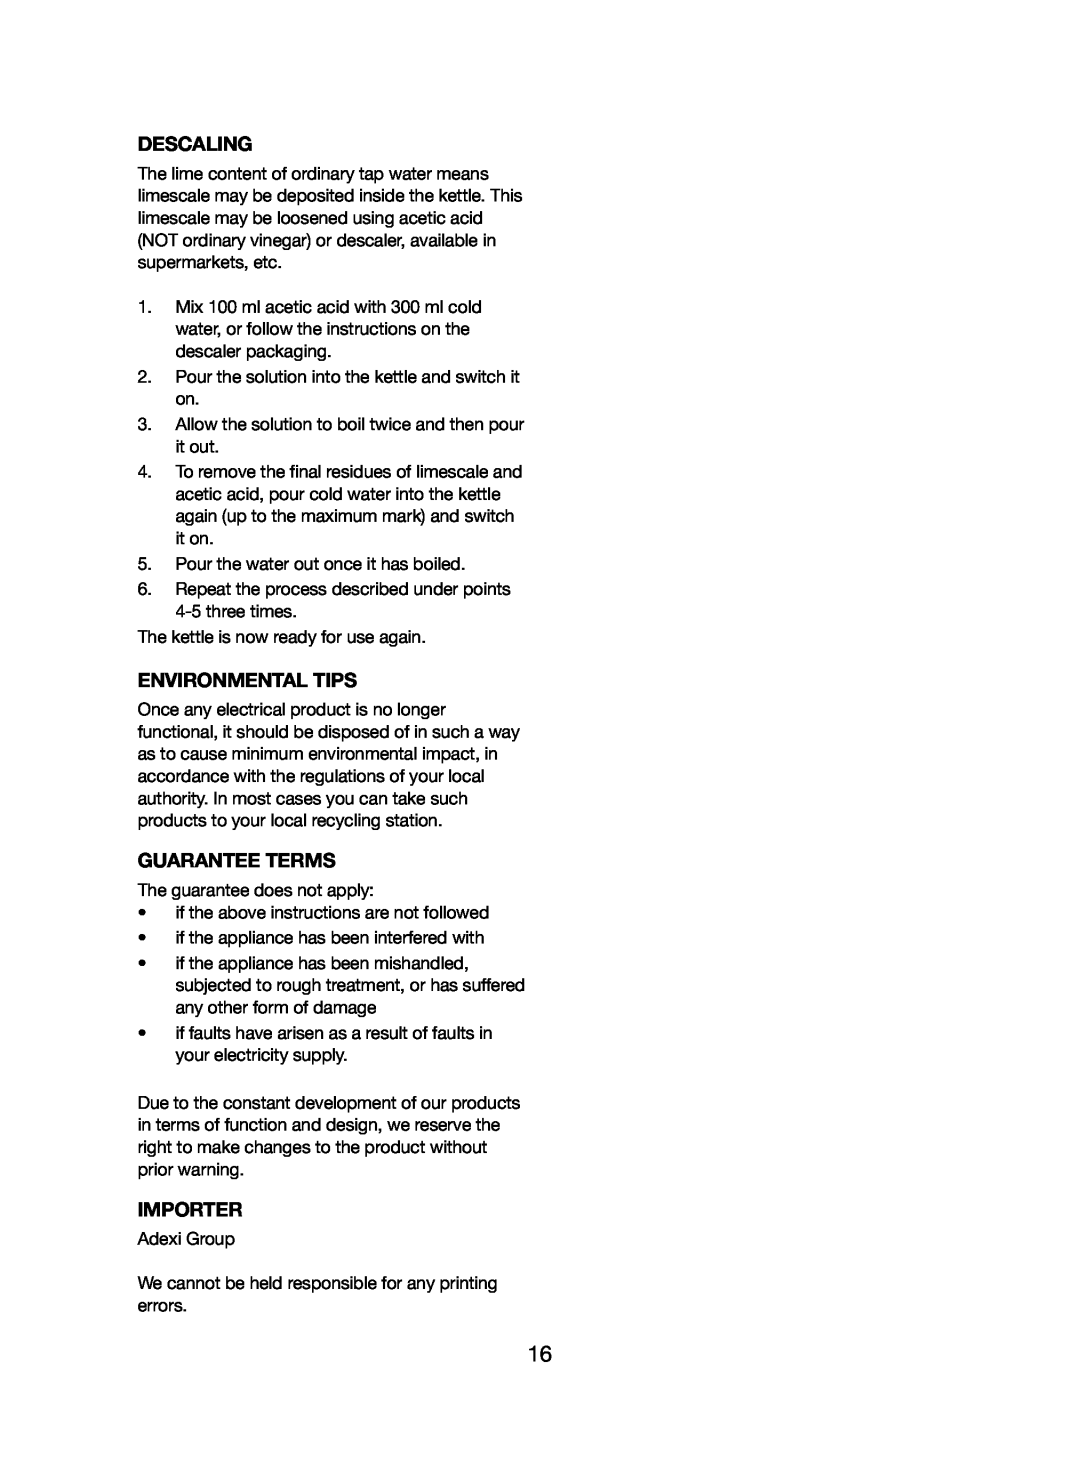 Melissa 245-031 manual Descaling, Environmental Tips, Guarantee Terms, Importer 